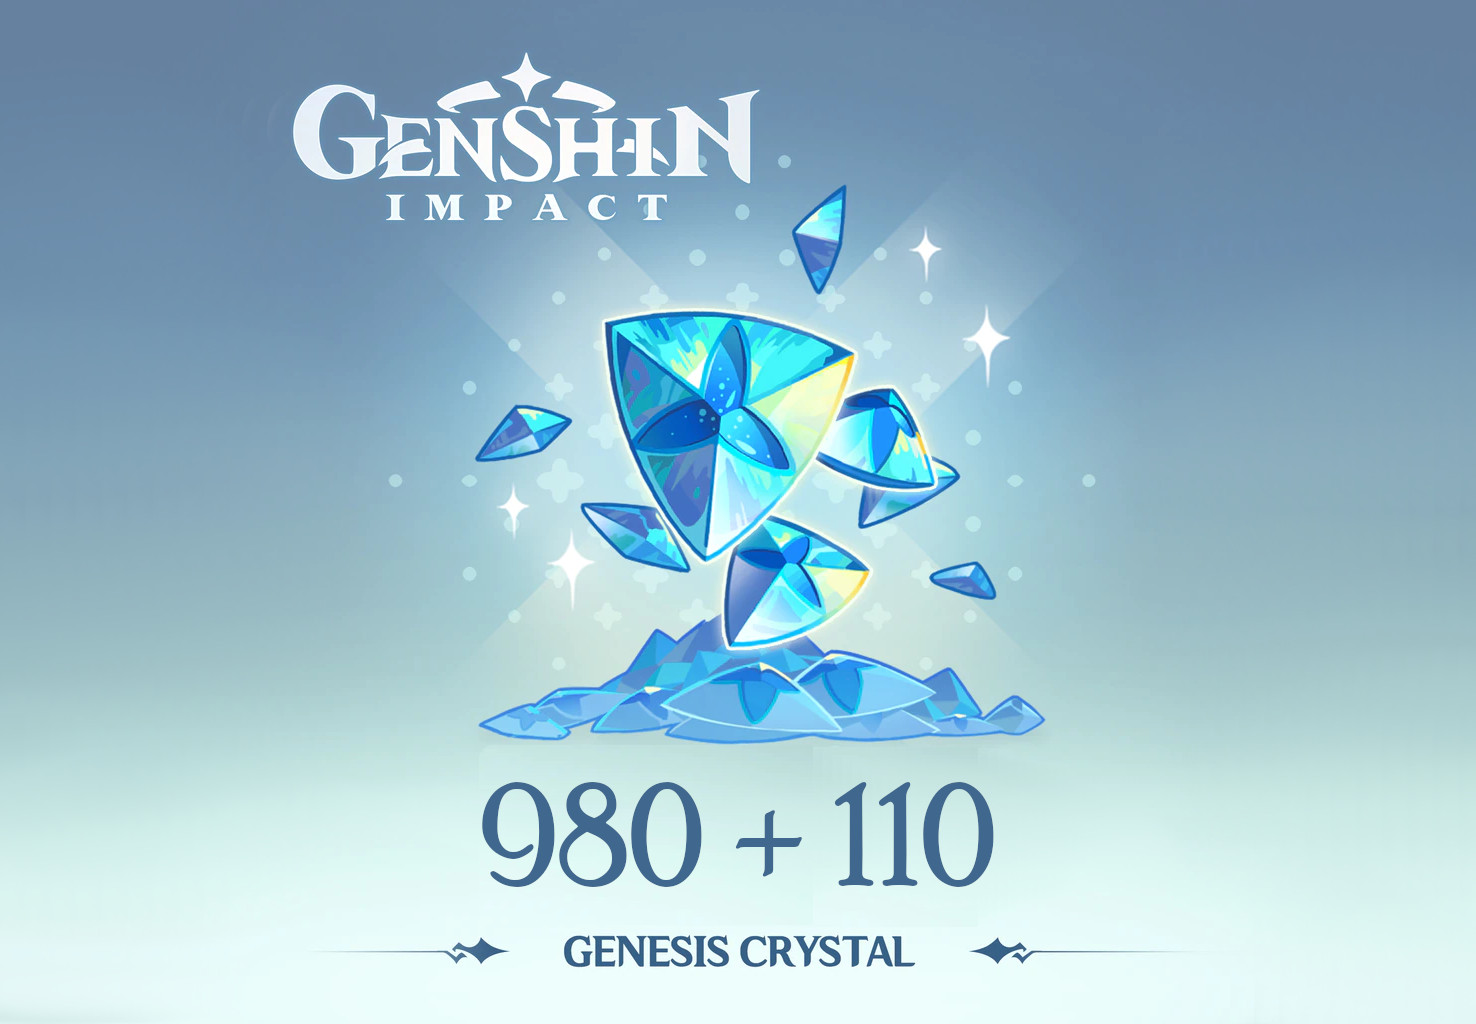 Genshin Impact - 980 + 110 Genesis Crystals Reidos Voucher [$ 17.23]